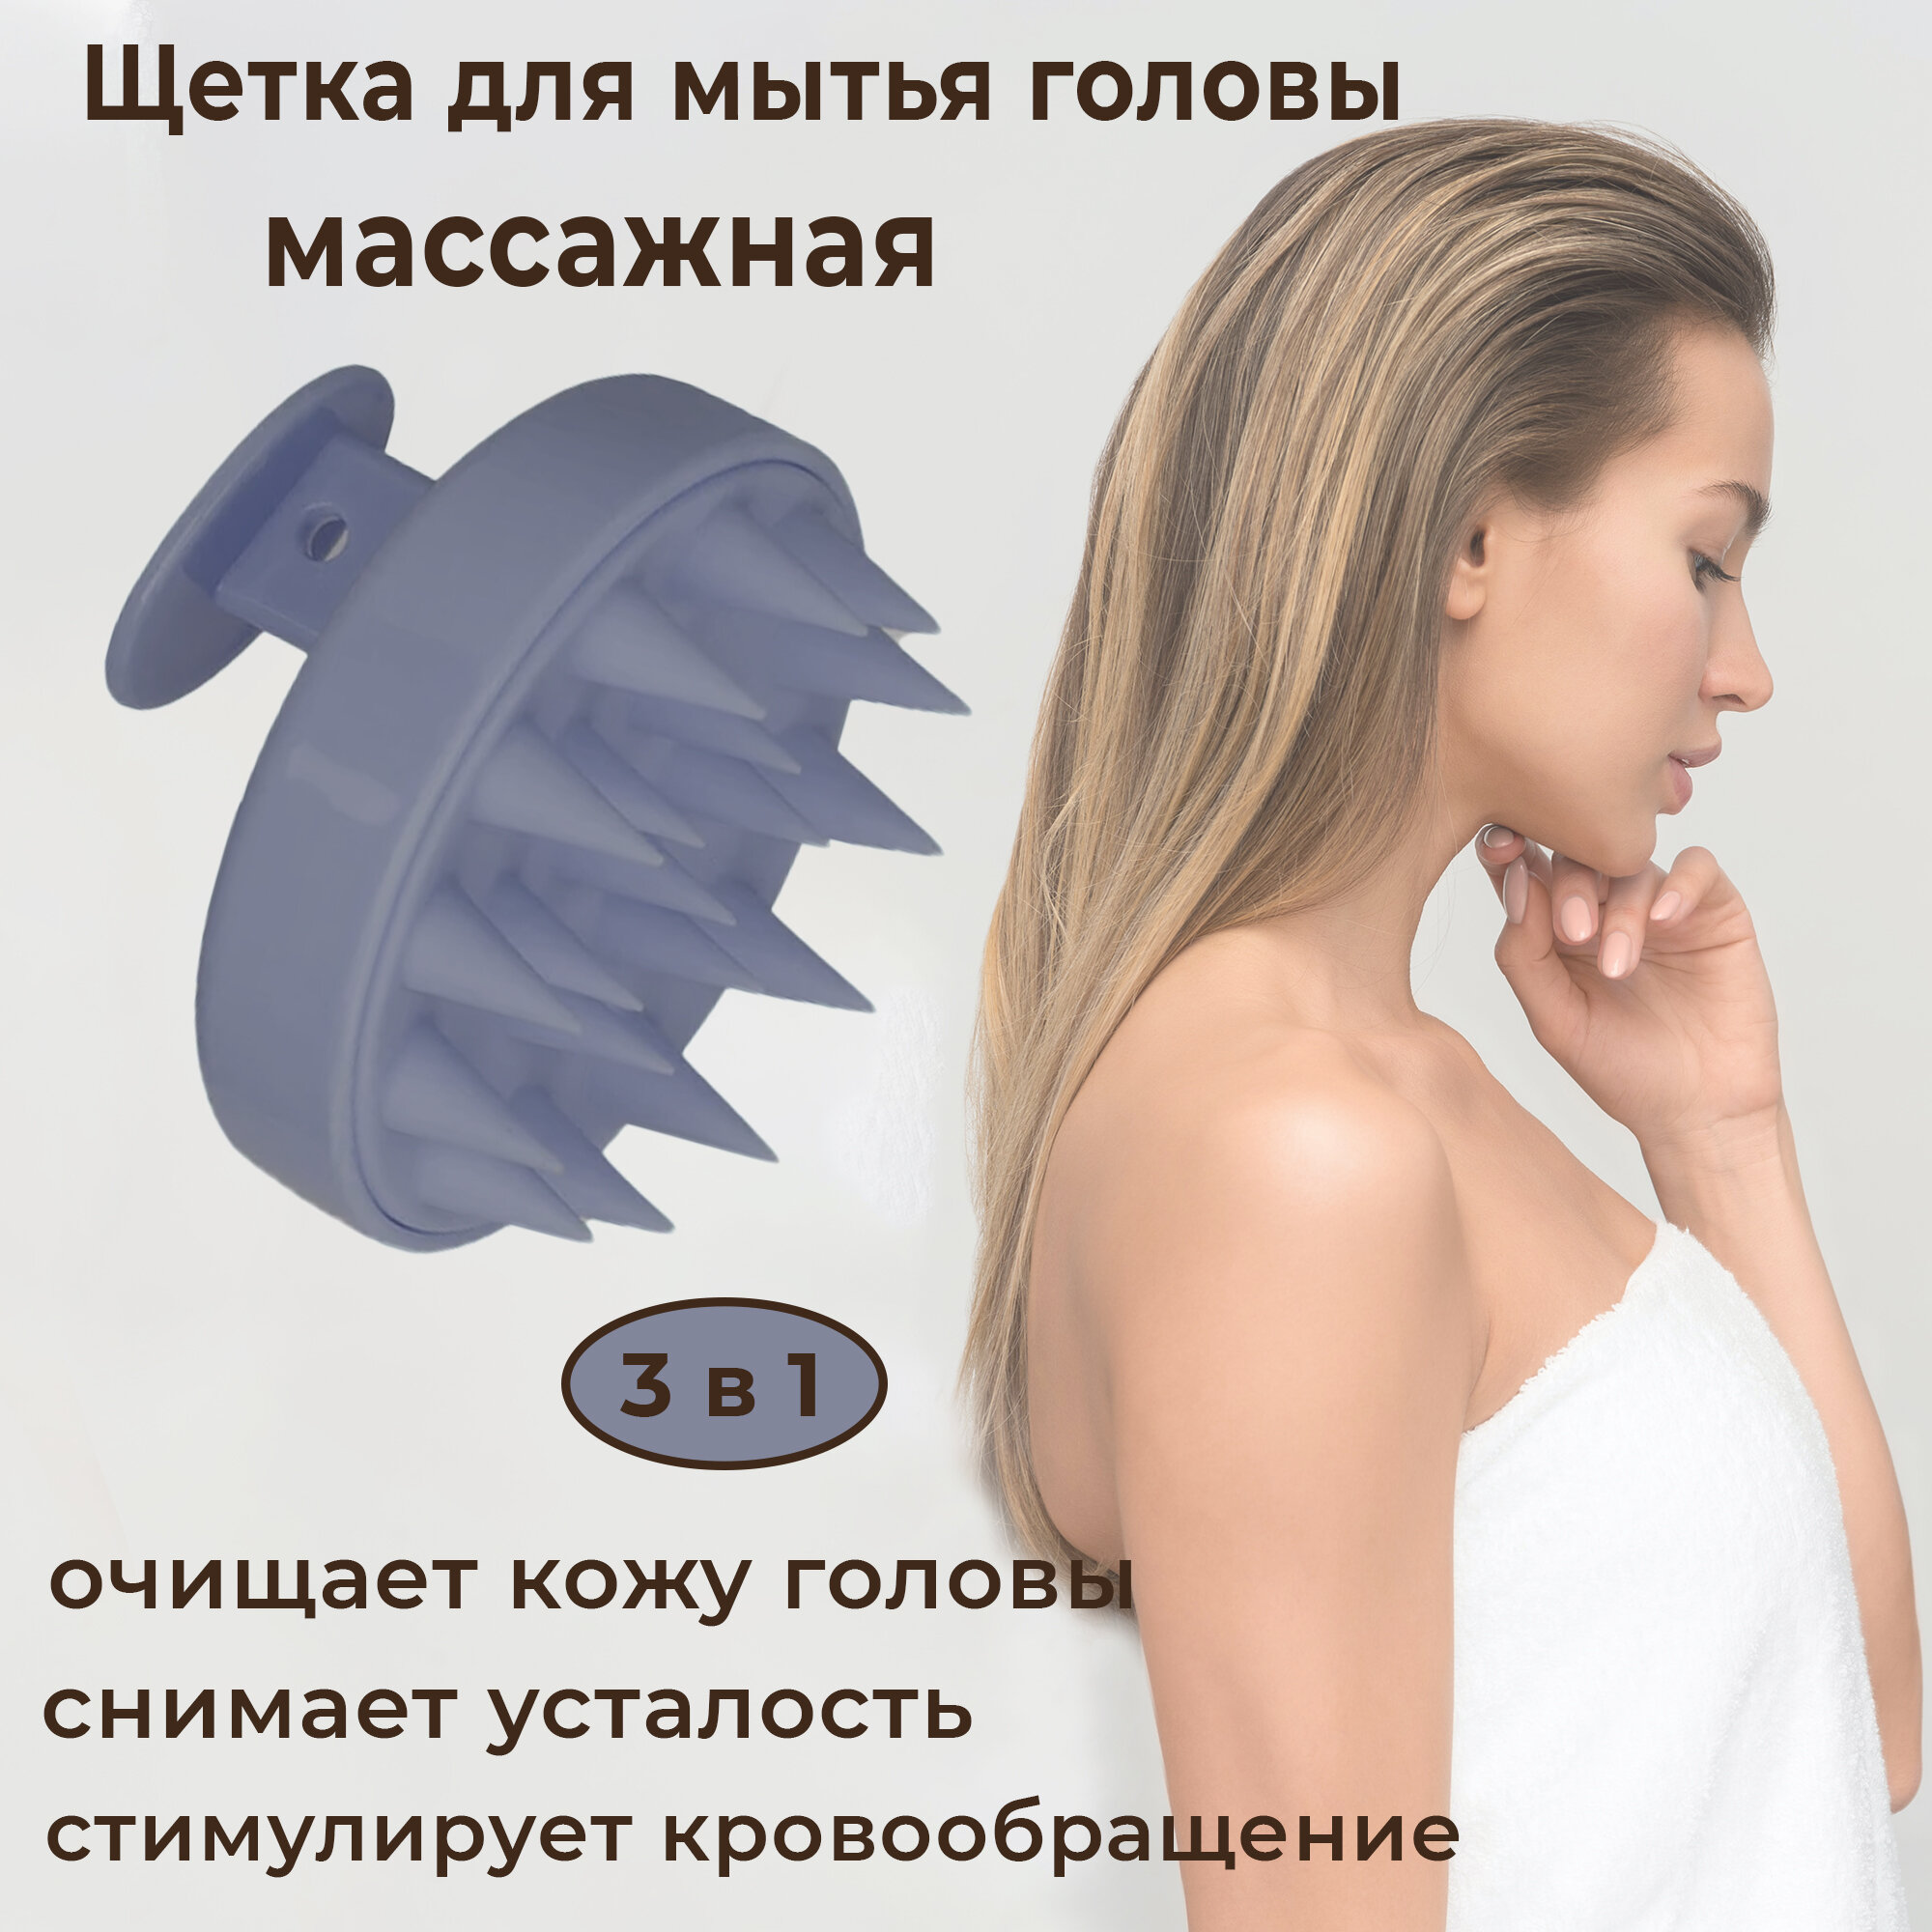 Силиконовая массажная щетка для мытья головы и волос (пурпурно-синяя)